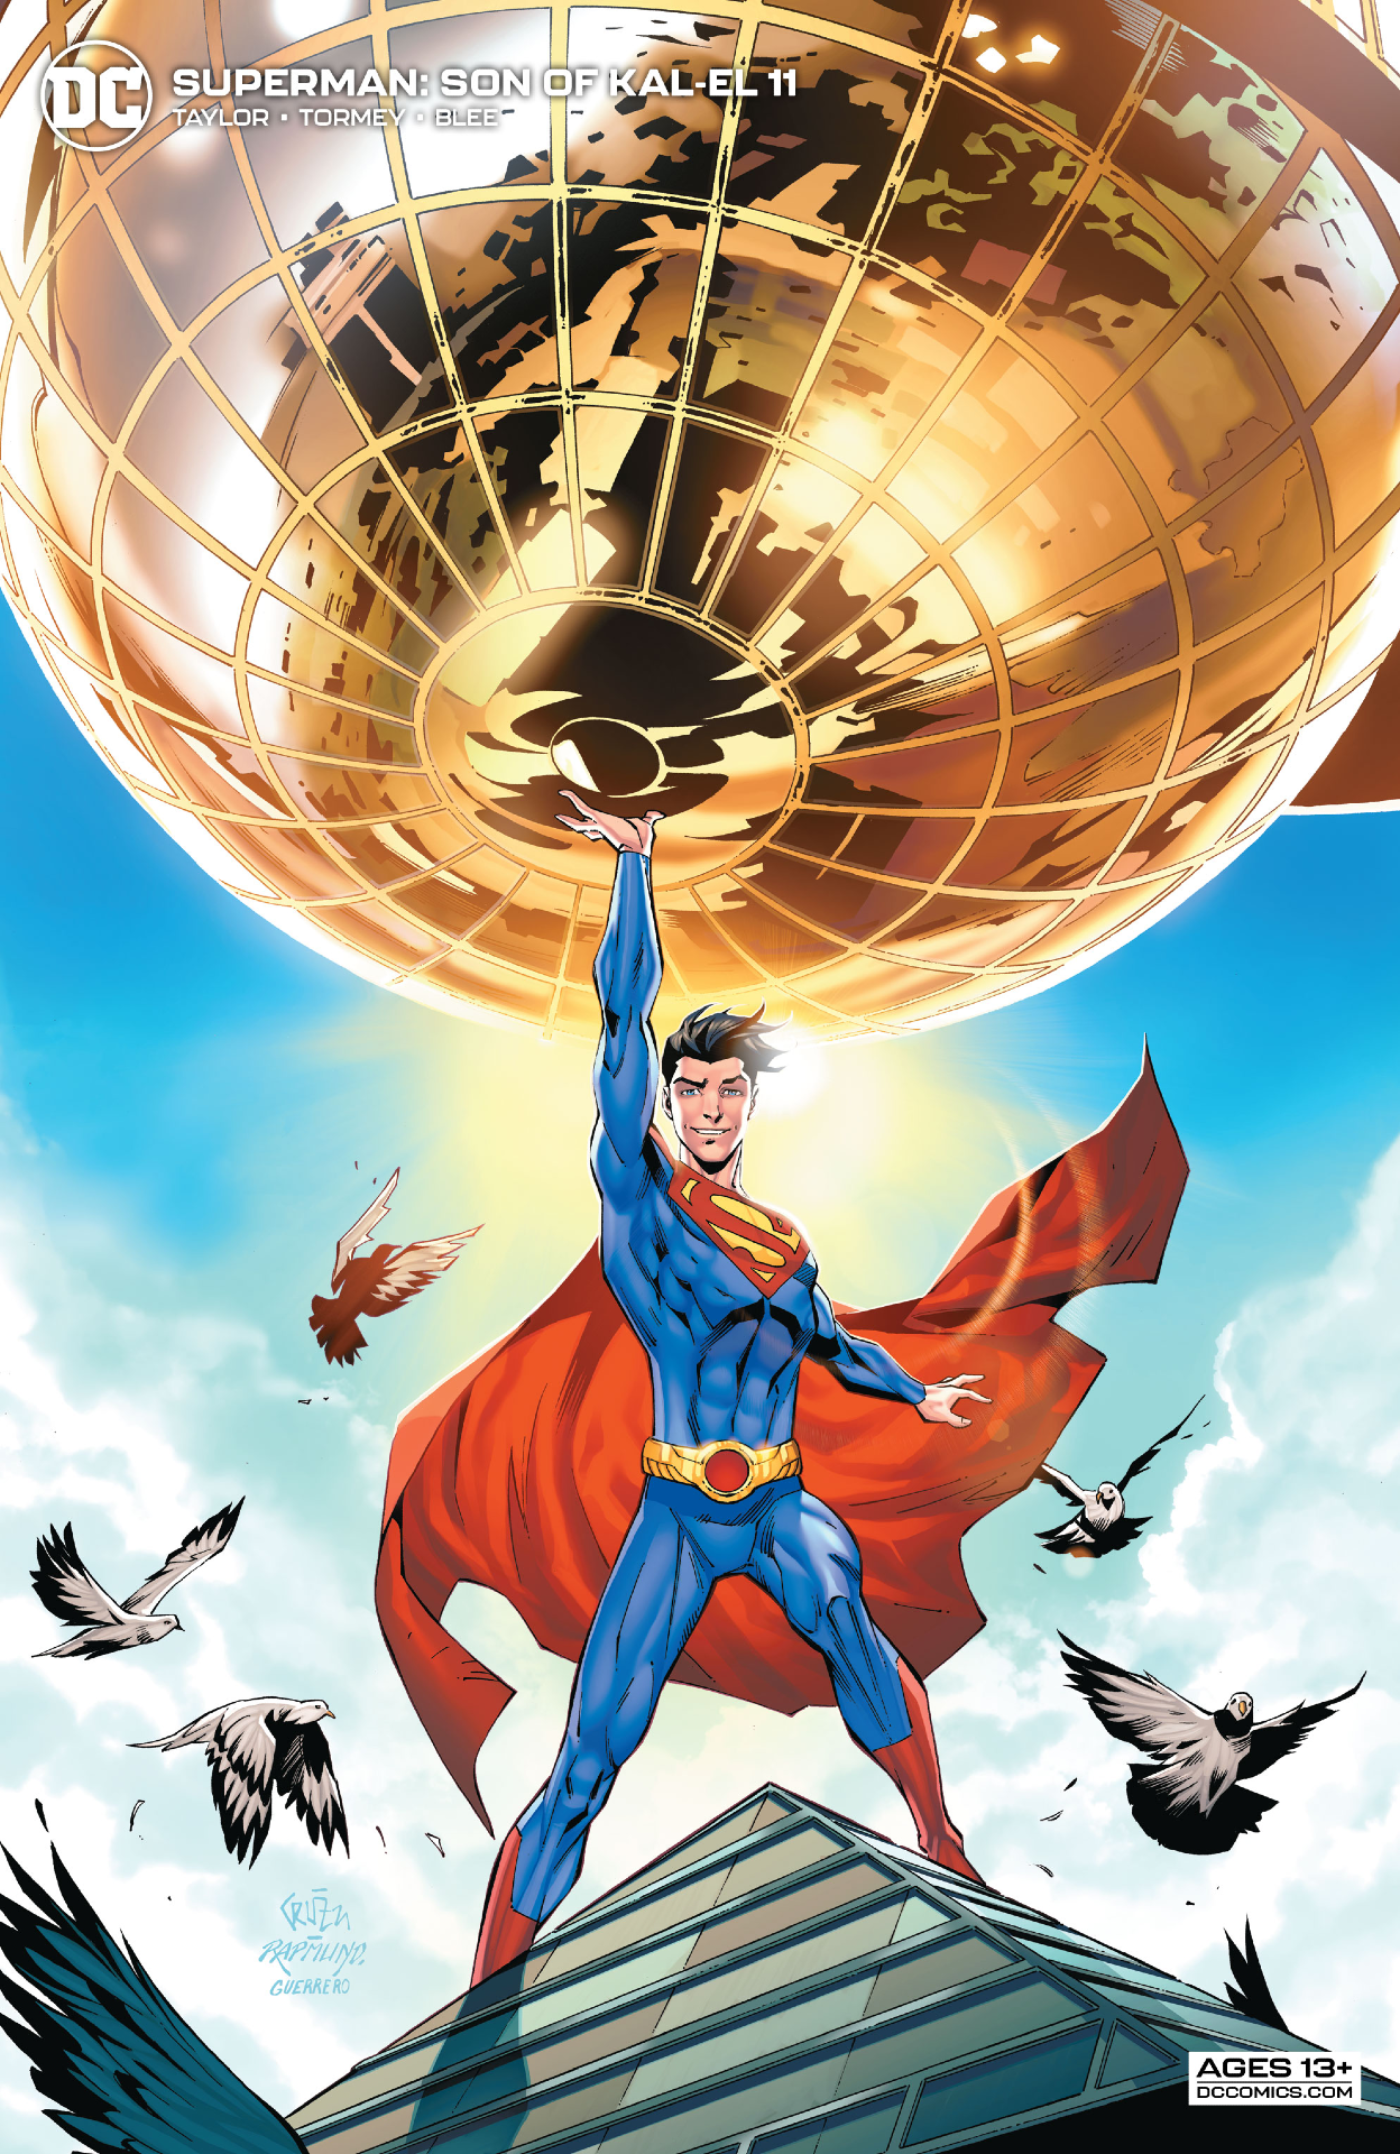 Superman son of kal el 11 variant cover